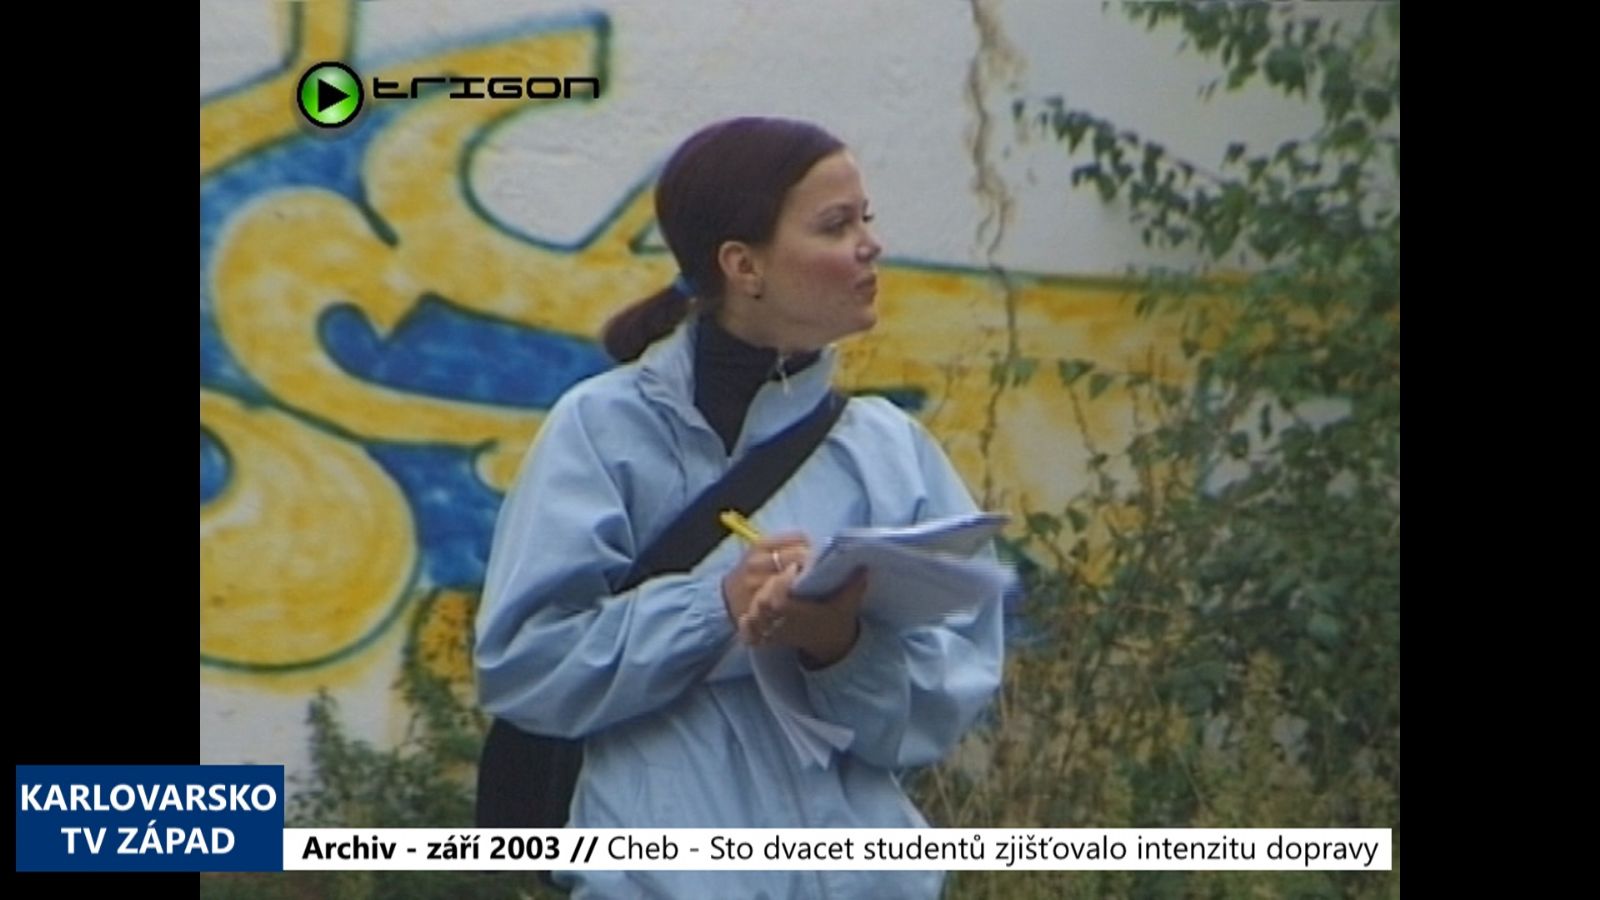 2003 – Cheb: Sto dvacet studentů zjišťovalo intenzitu dopravy (TV Západ)